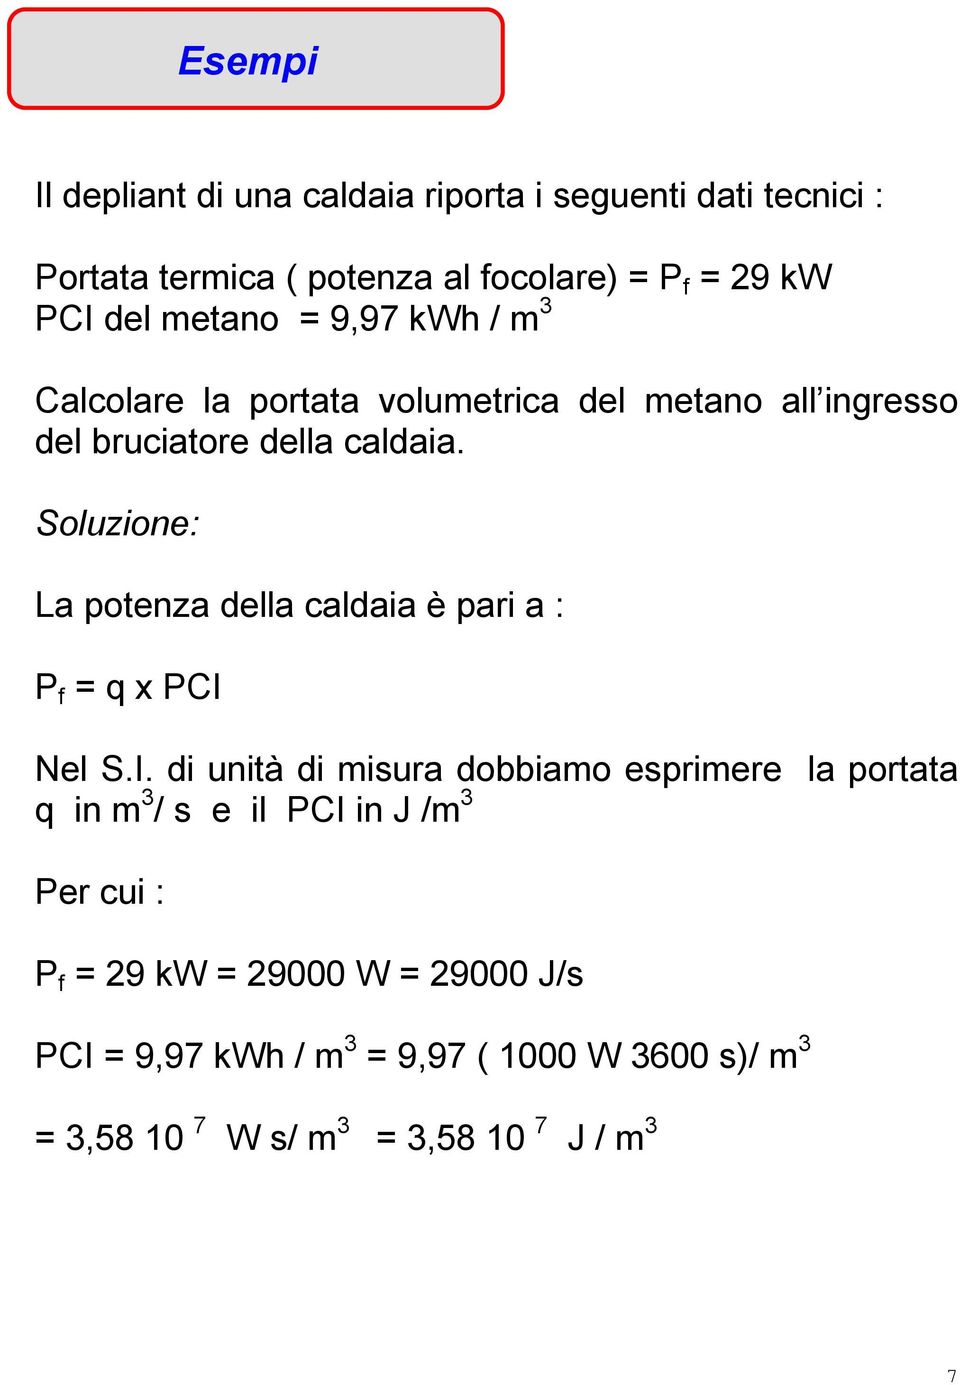 Soluzione: La potenza della caldaia è pari a : P f = q x PCI 